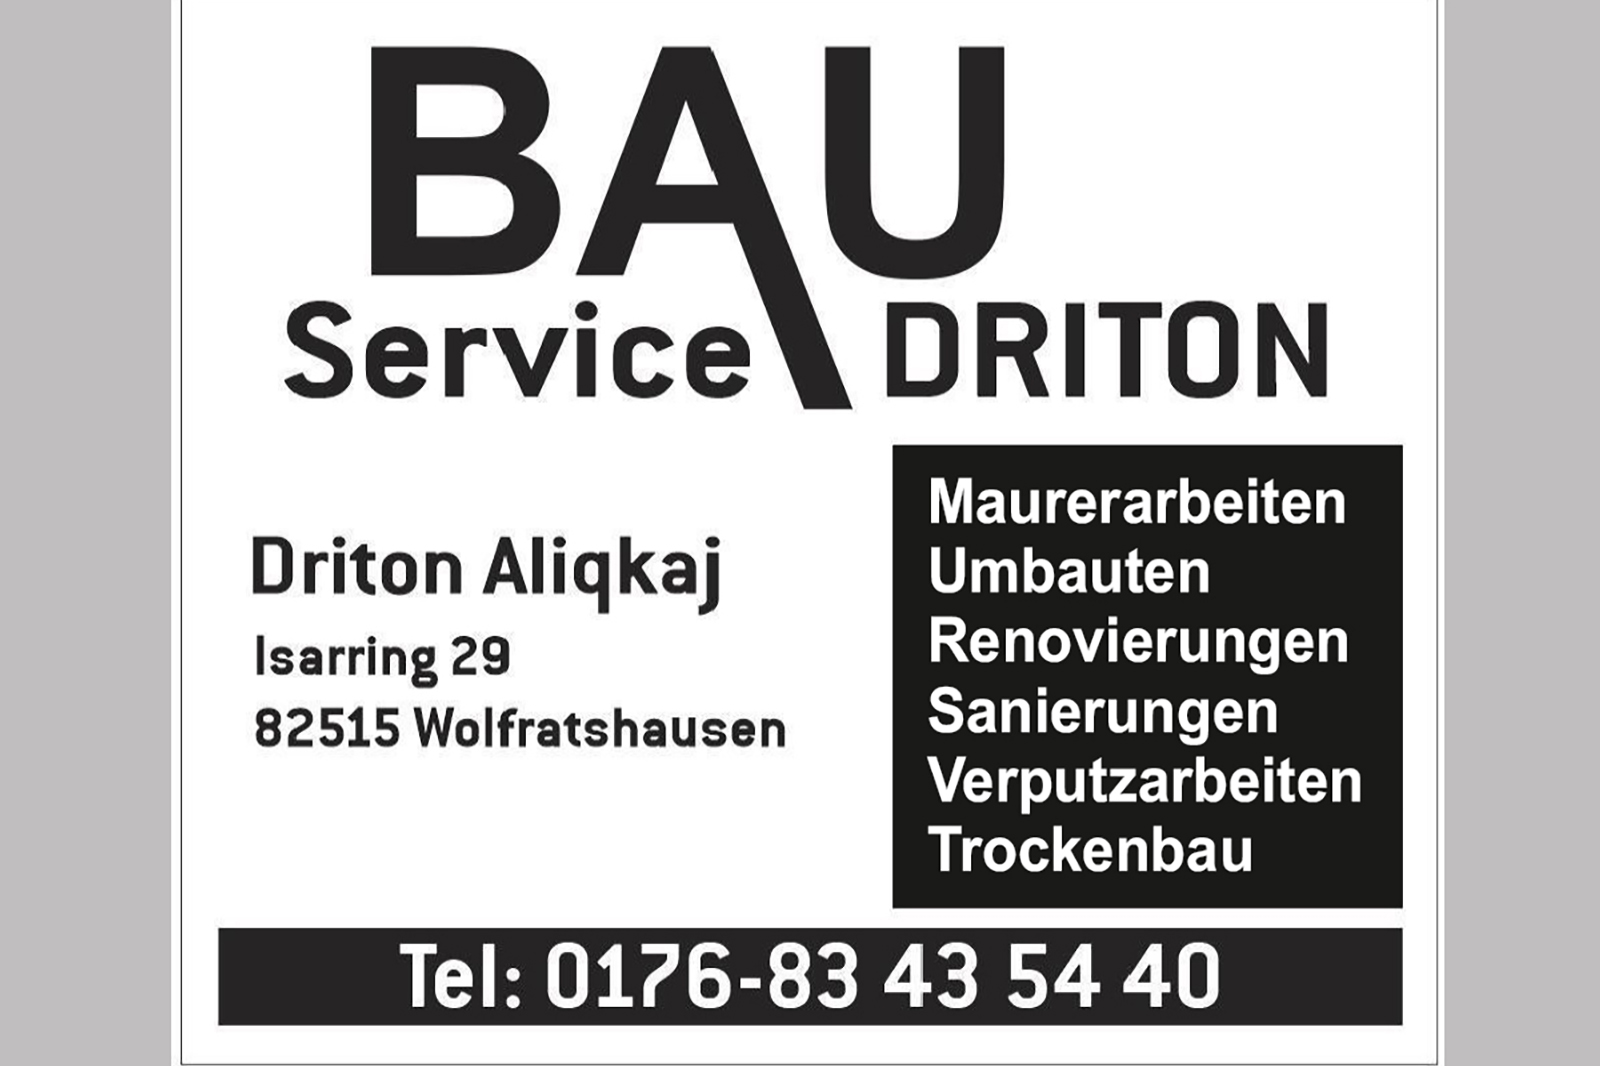 Impressum, Logo. Allround-Dienstleister rund um Bau und Gebäude Bauservice Driton  Tätig in Wolfratshausen und Umgebund und im Raum München. Kurzfristige Termine